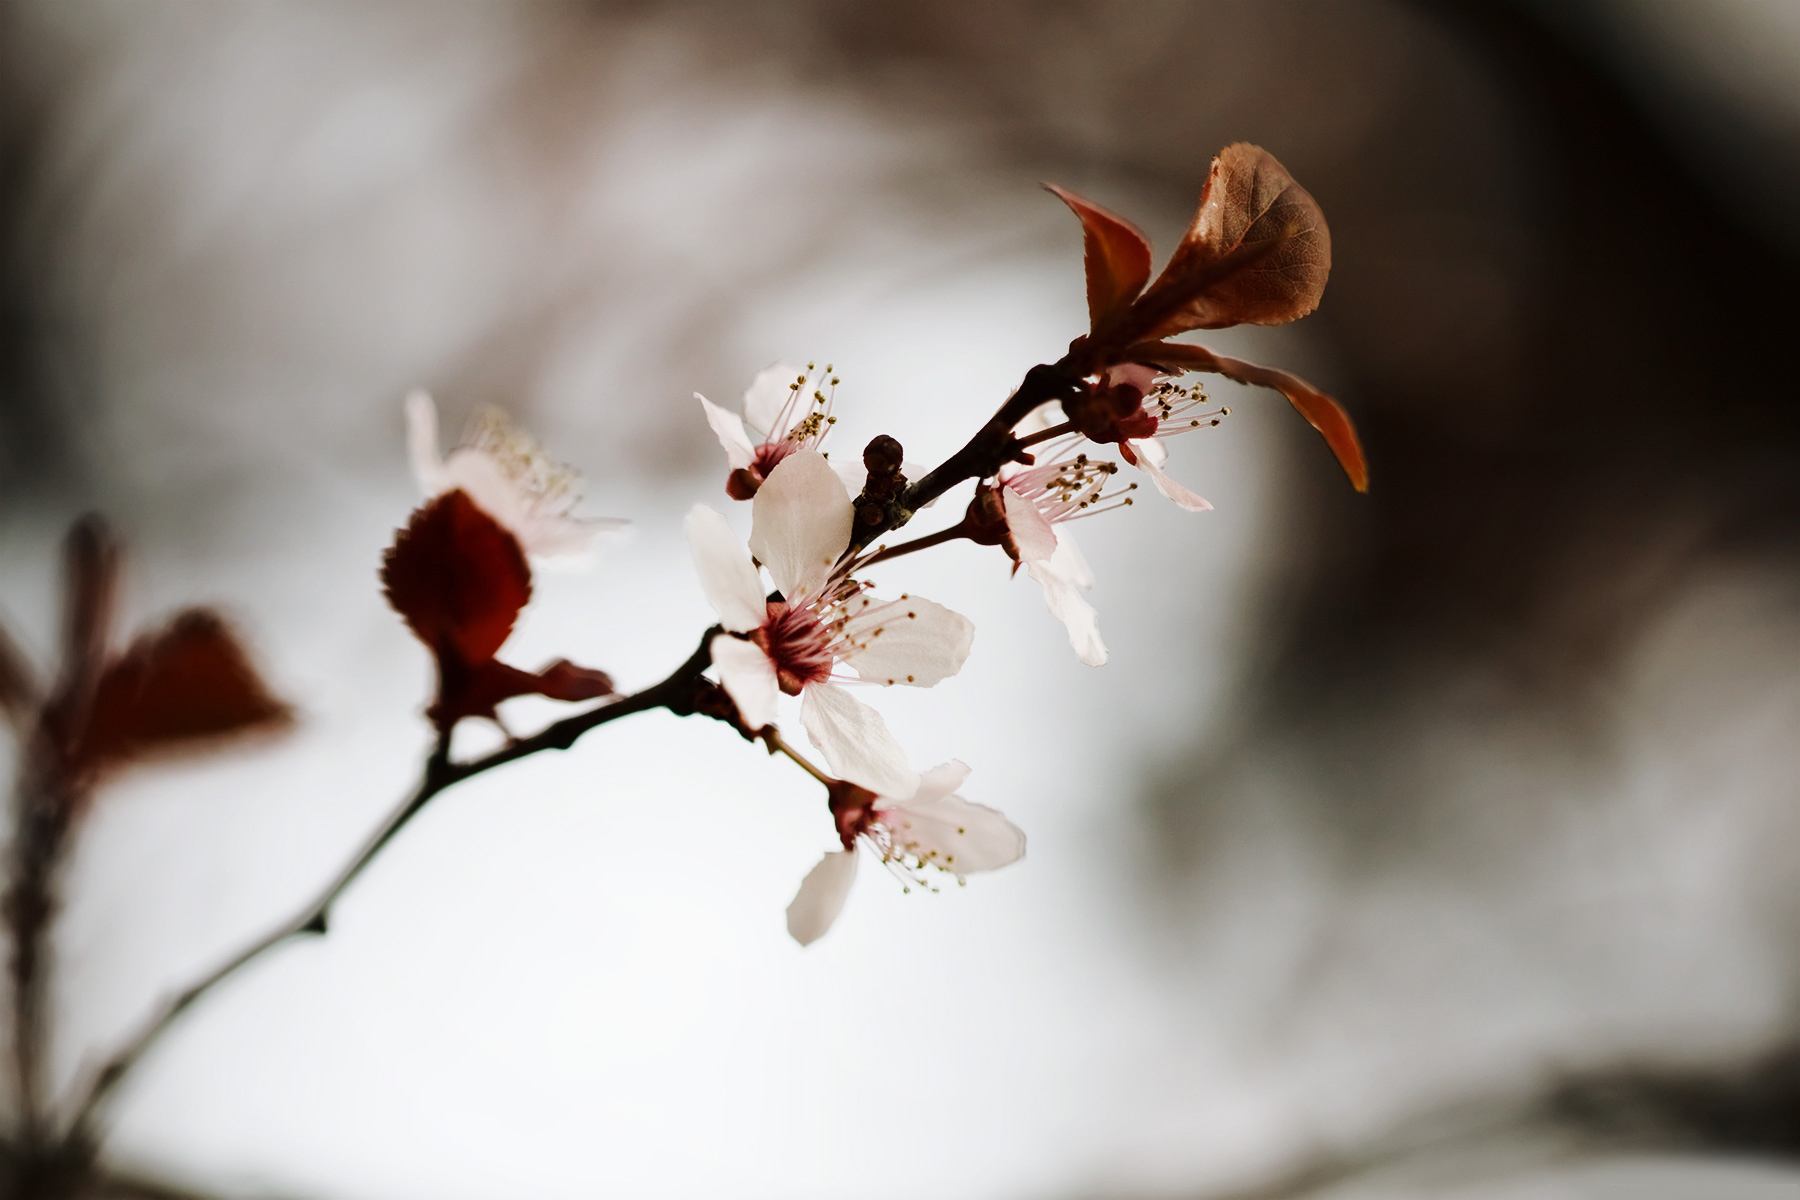 دانلود تصویر استوک شکوفه های درخت گیلاس با کیفیت بالا